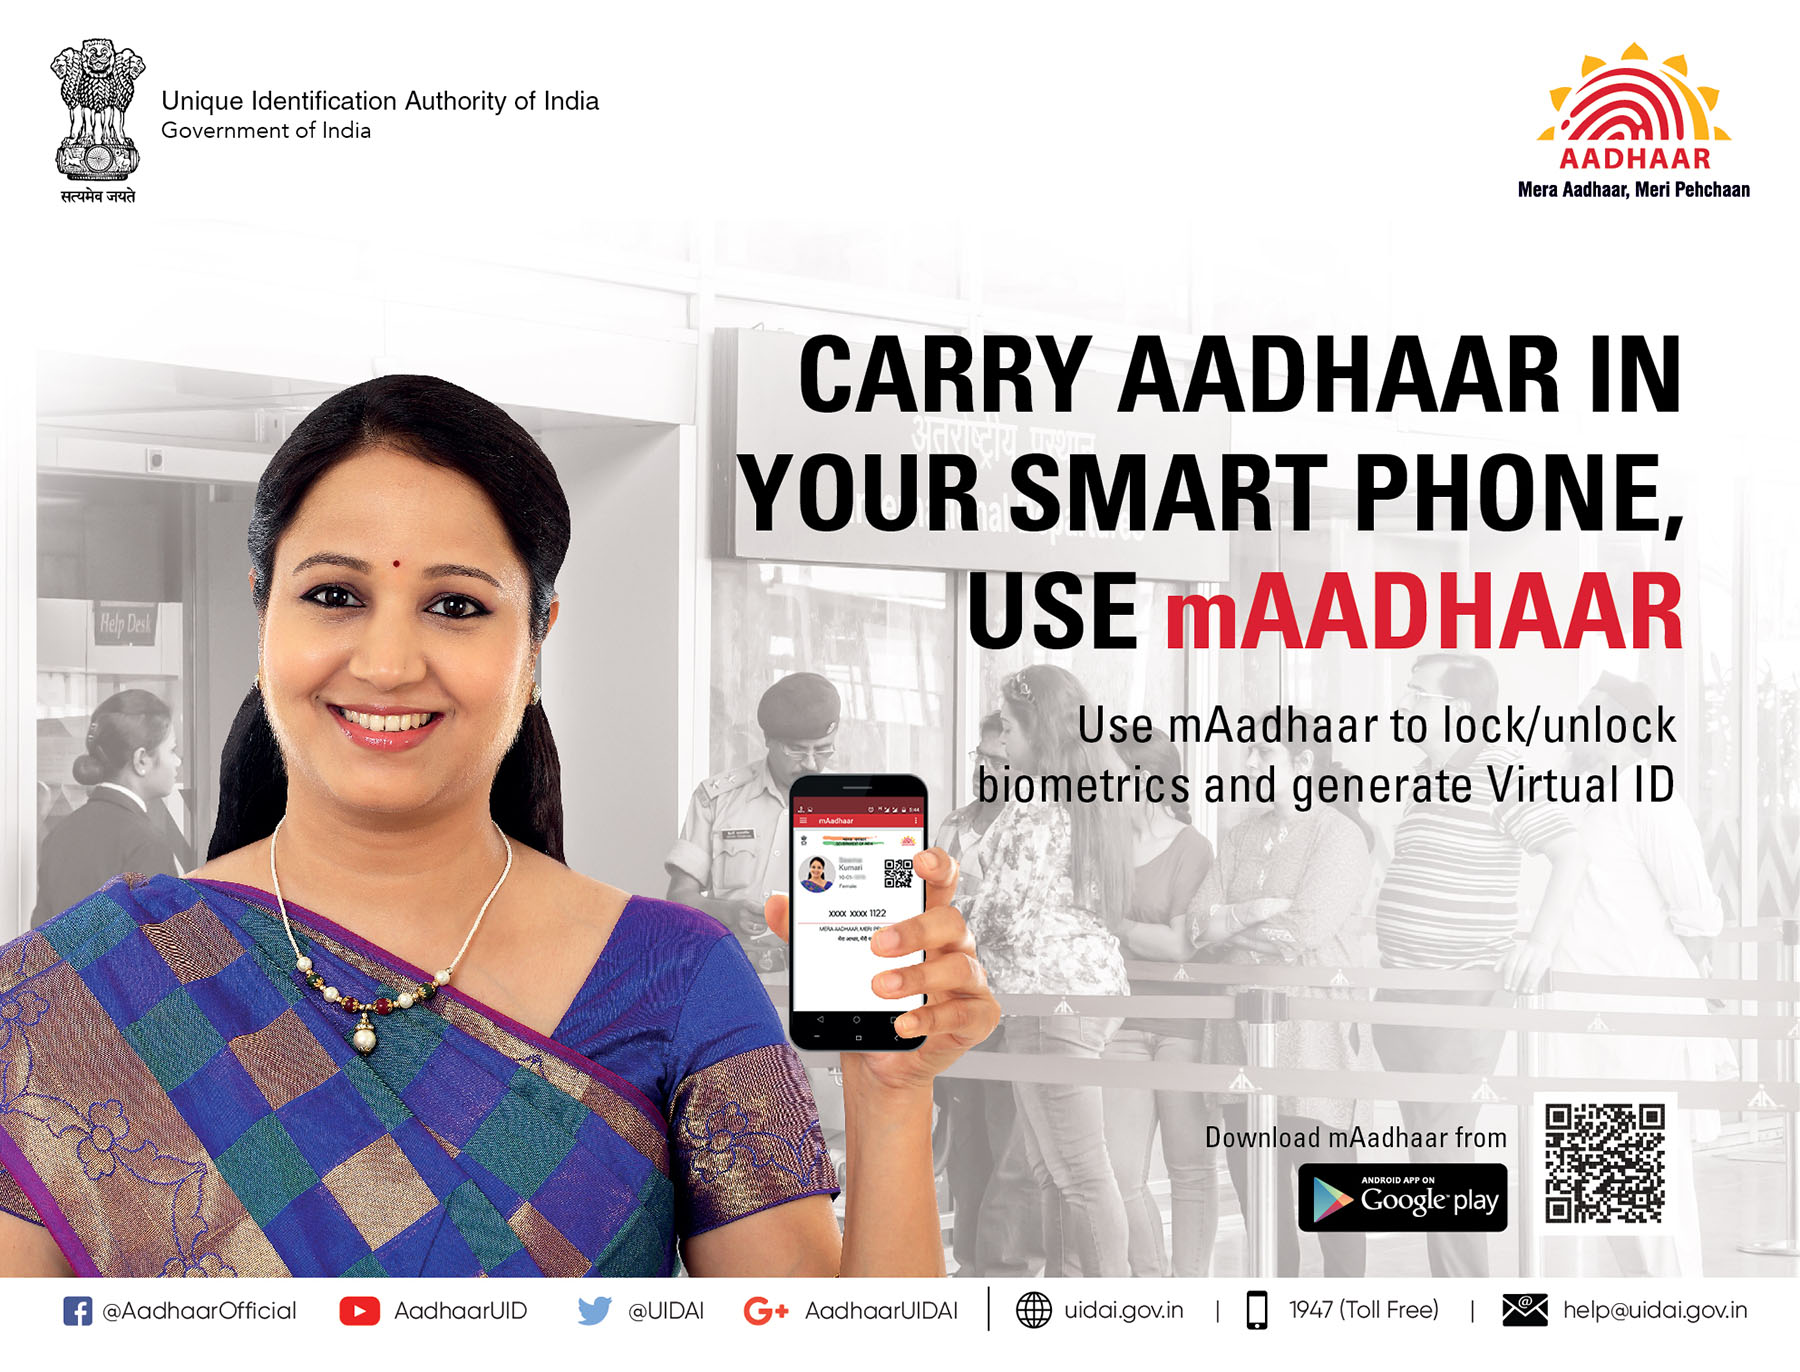 Carry Aadhaar always, Use mAadhaar